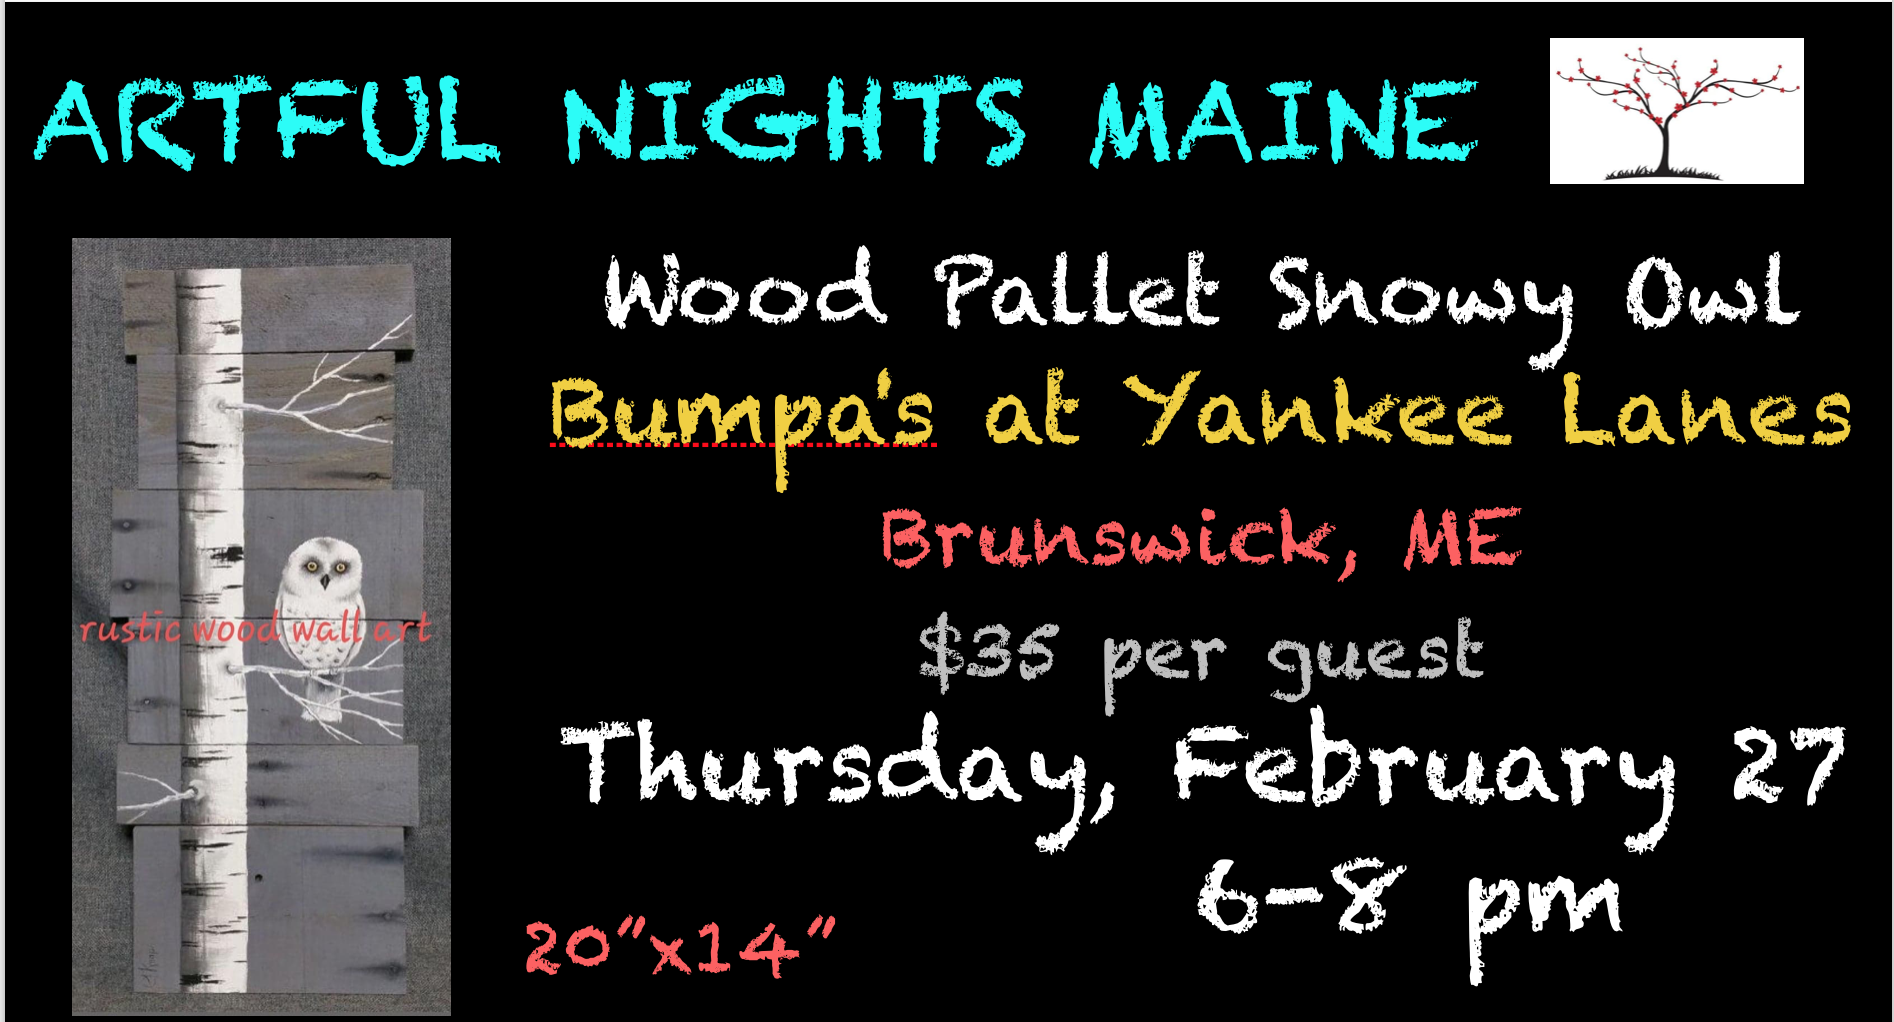 Wood Pallet Snowy Owl at Bumpa's at Yankee Lanes